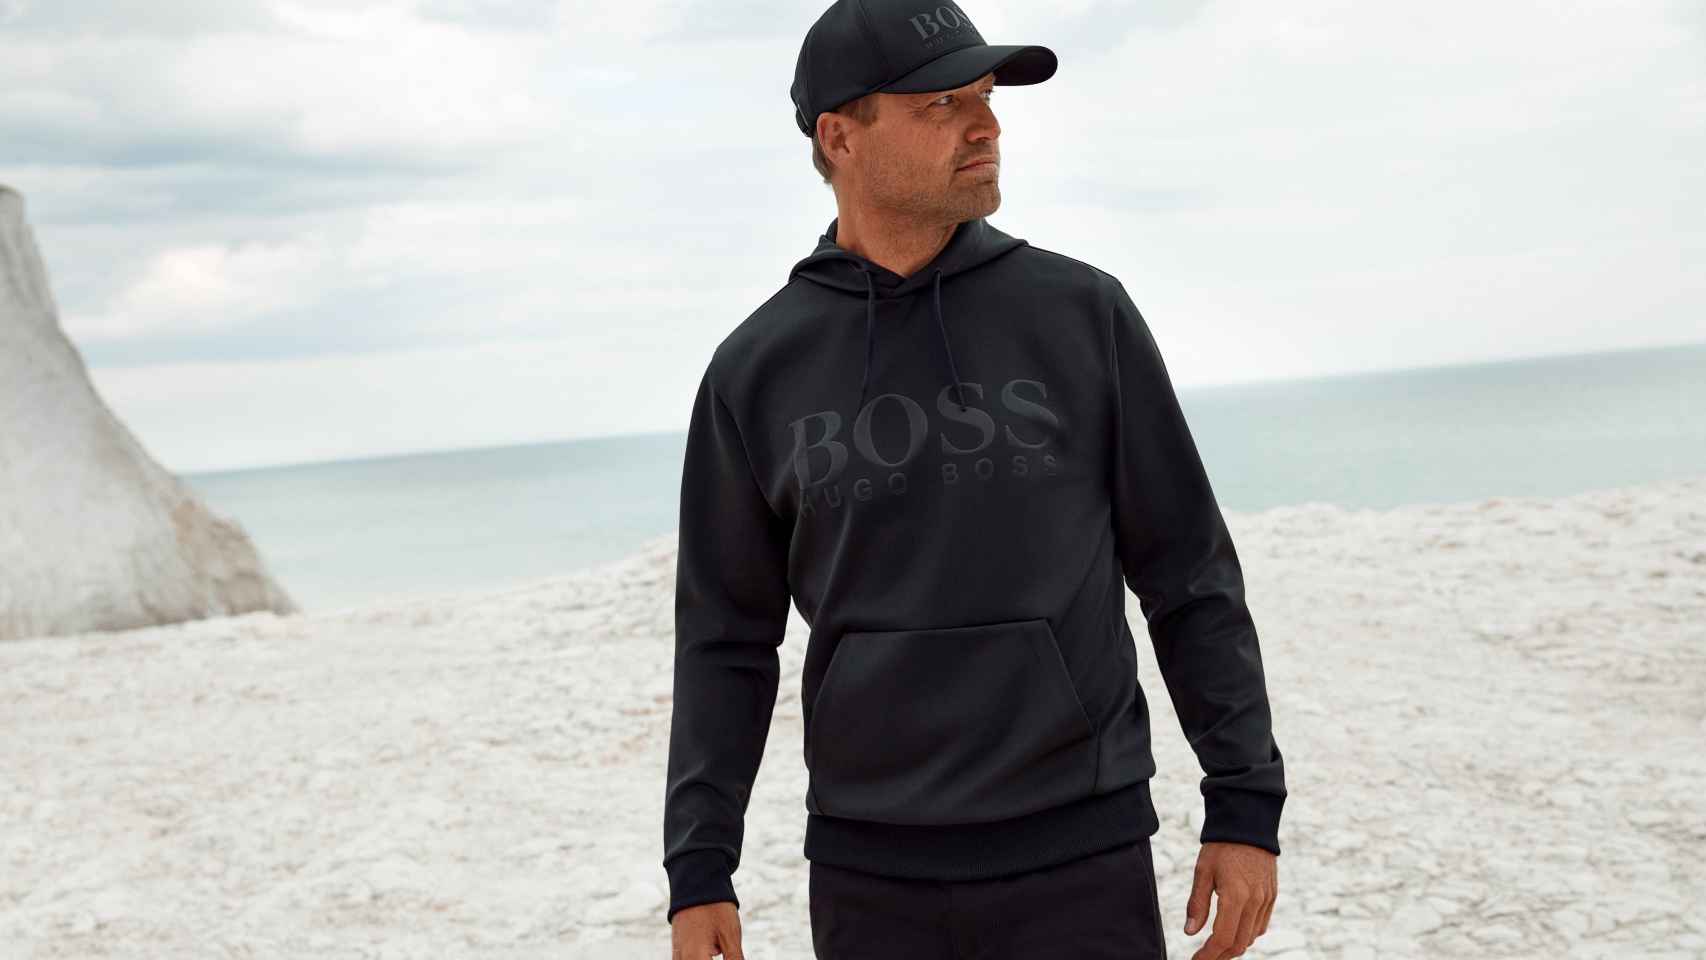 Hugo Boss: la firma textil presenta su nueva colección cápsula ideada para el hombre deportista